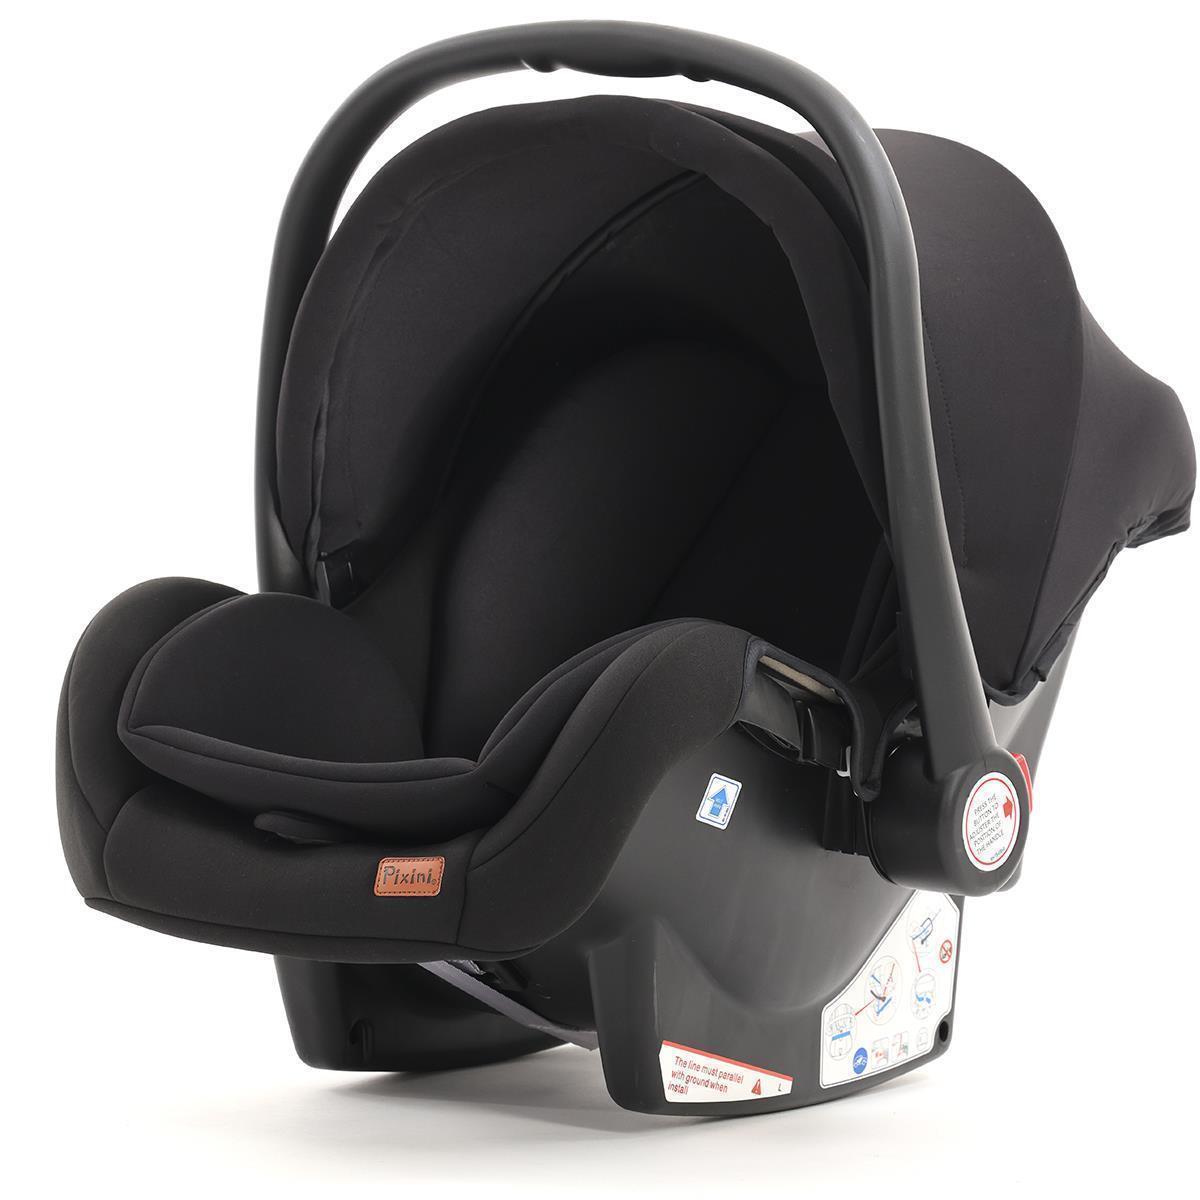 Kindersitze & Aluna Kinderwagen direkt Hersteller 0 Babyschale -13Kg schwarz | vom - Zubehör Pixini | Pixini